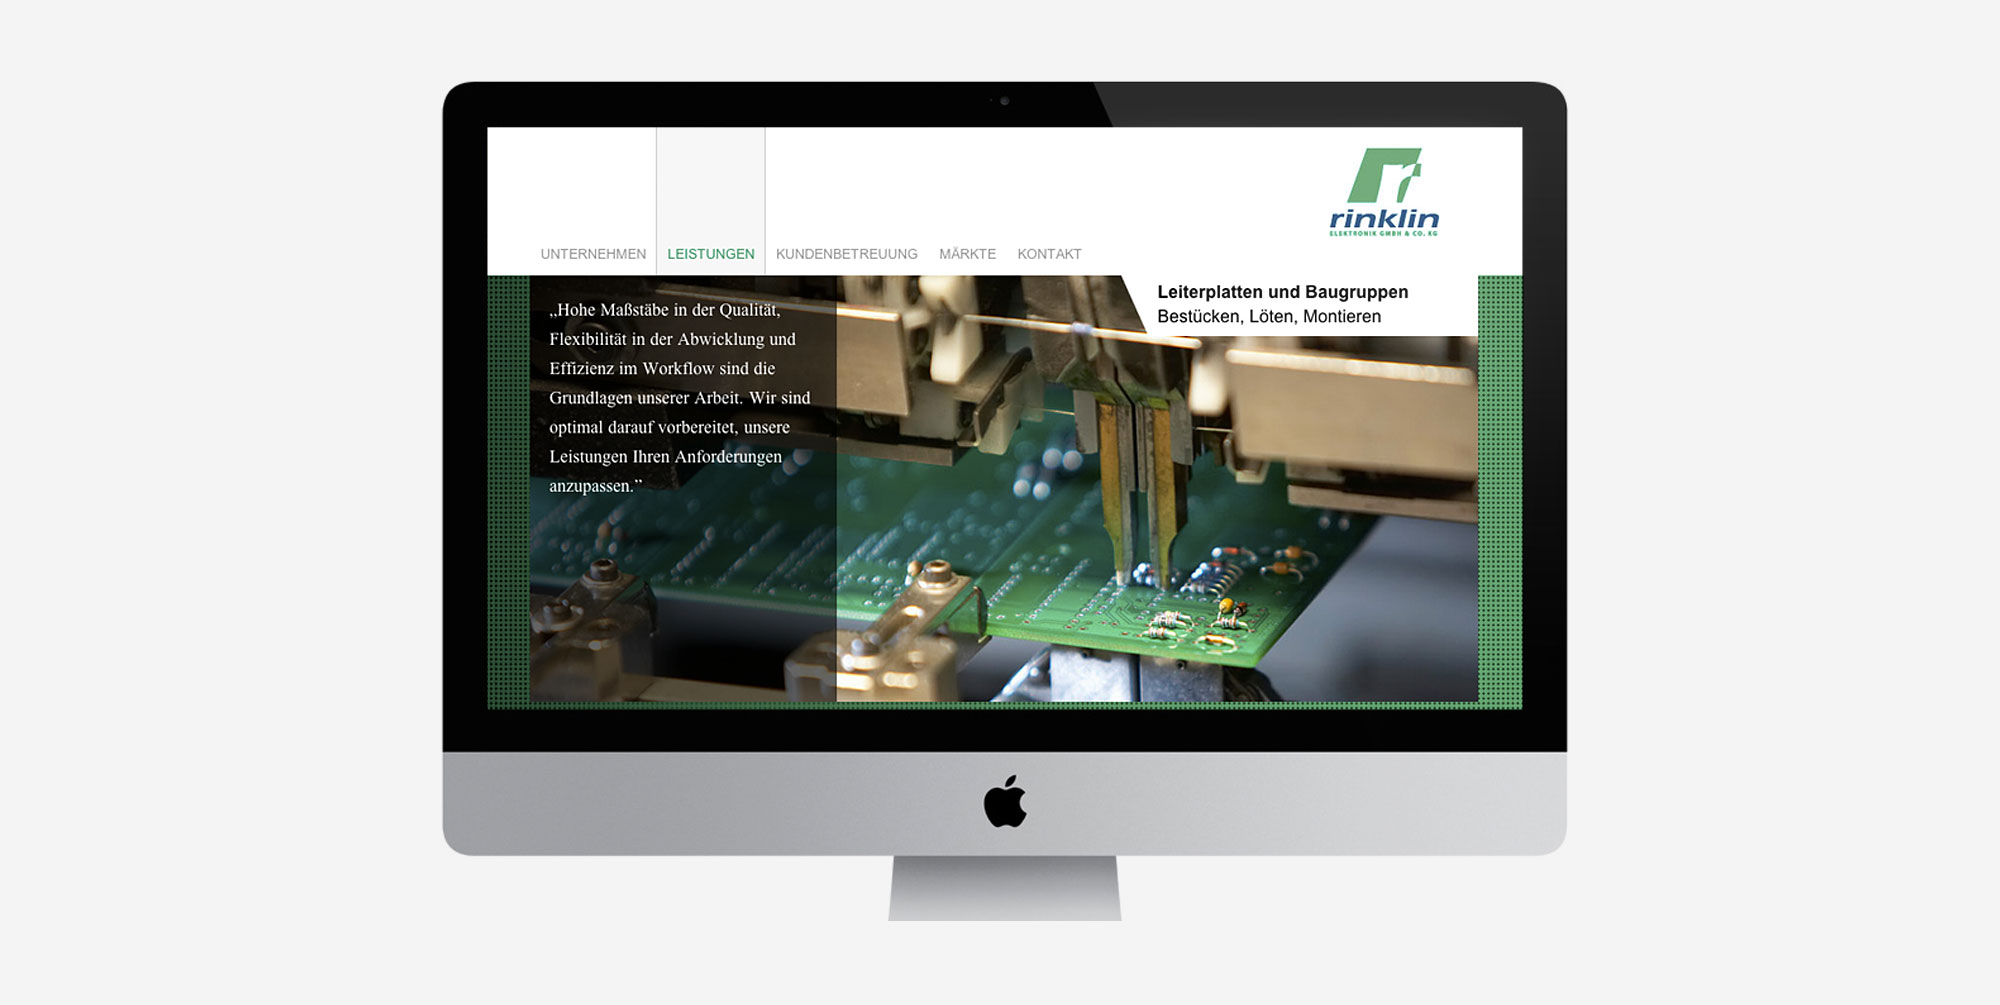 Für Rinklin Elektronik aus Neuffen entwickelte 75a die neue Website